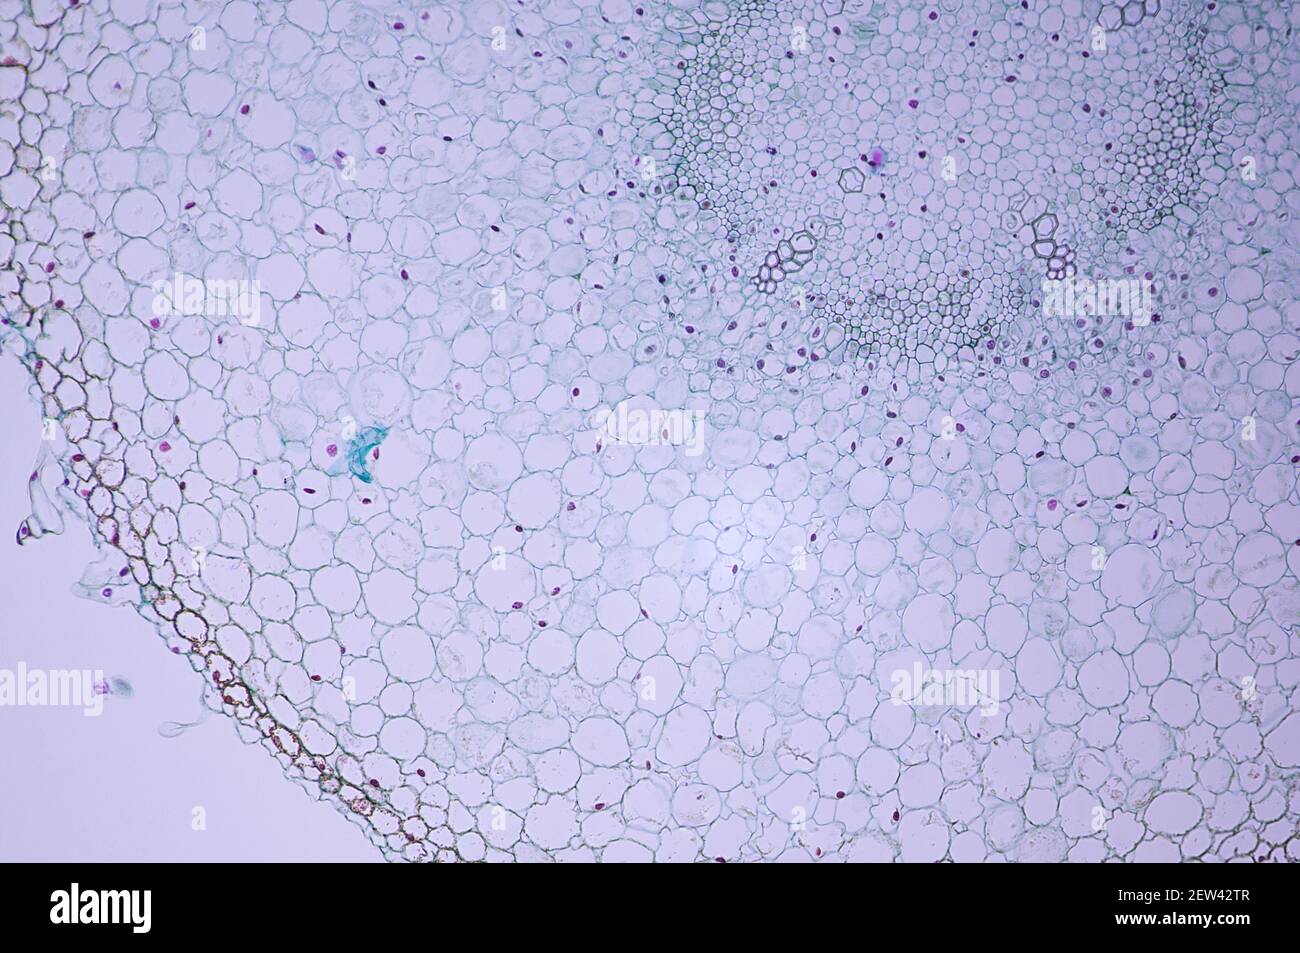 Diez veces la ampliación de las células de raíz del cabello bajo una luz microscopio Foto de stock